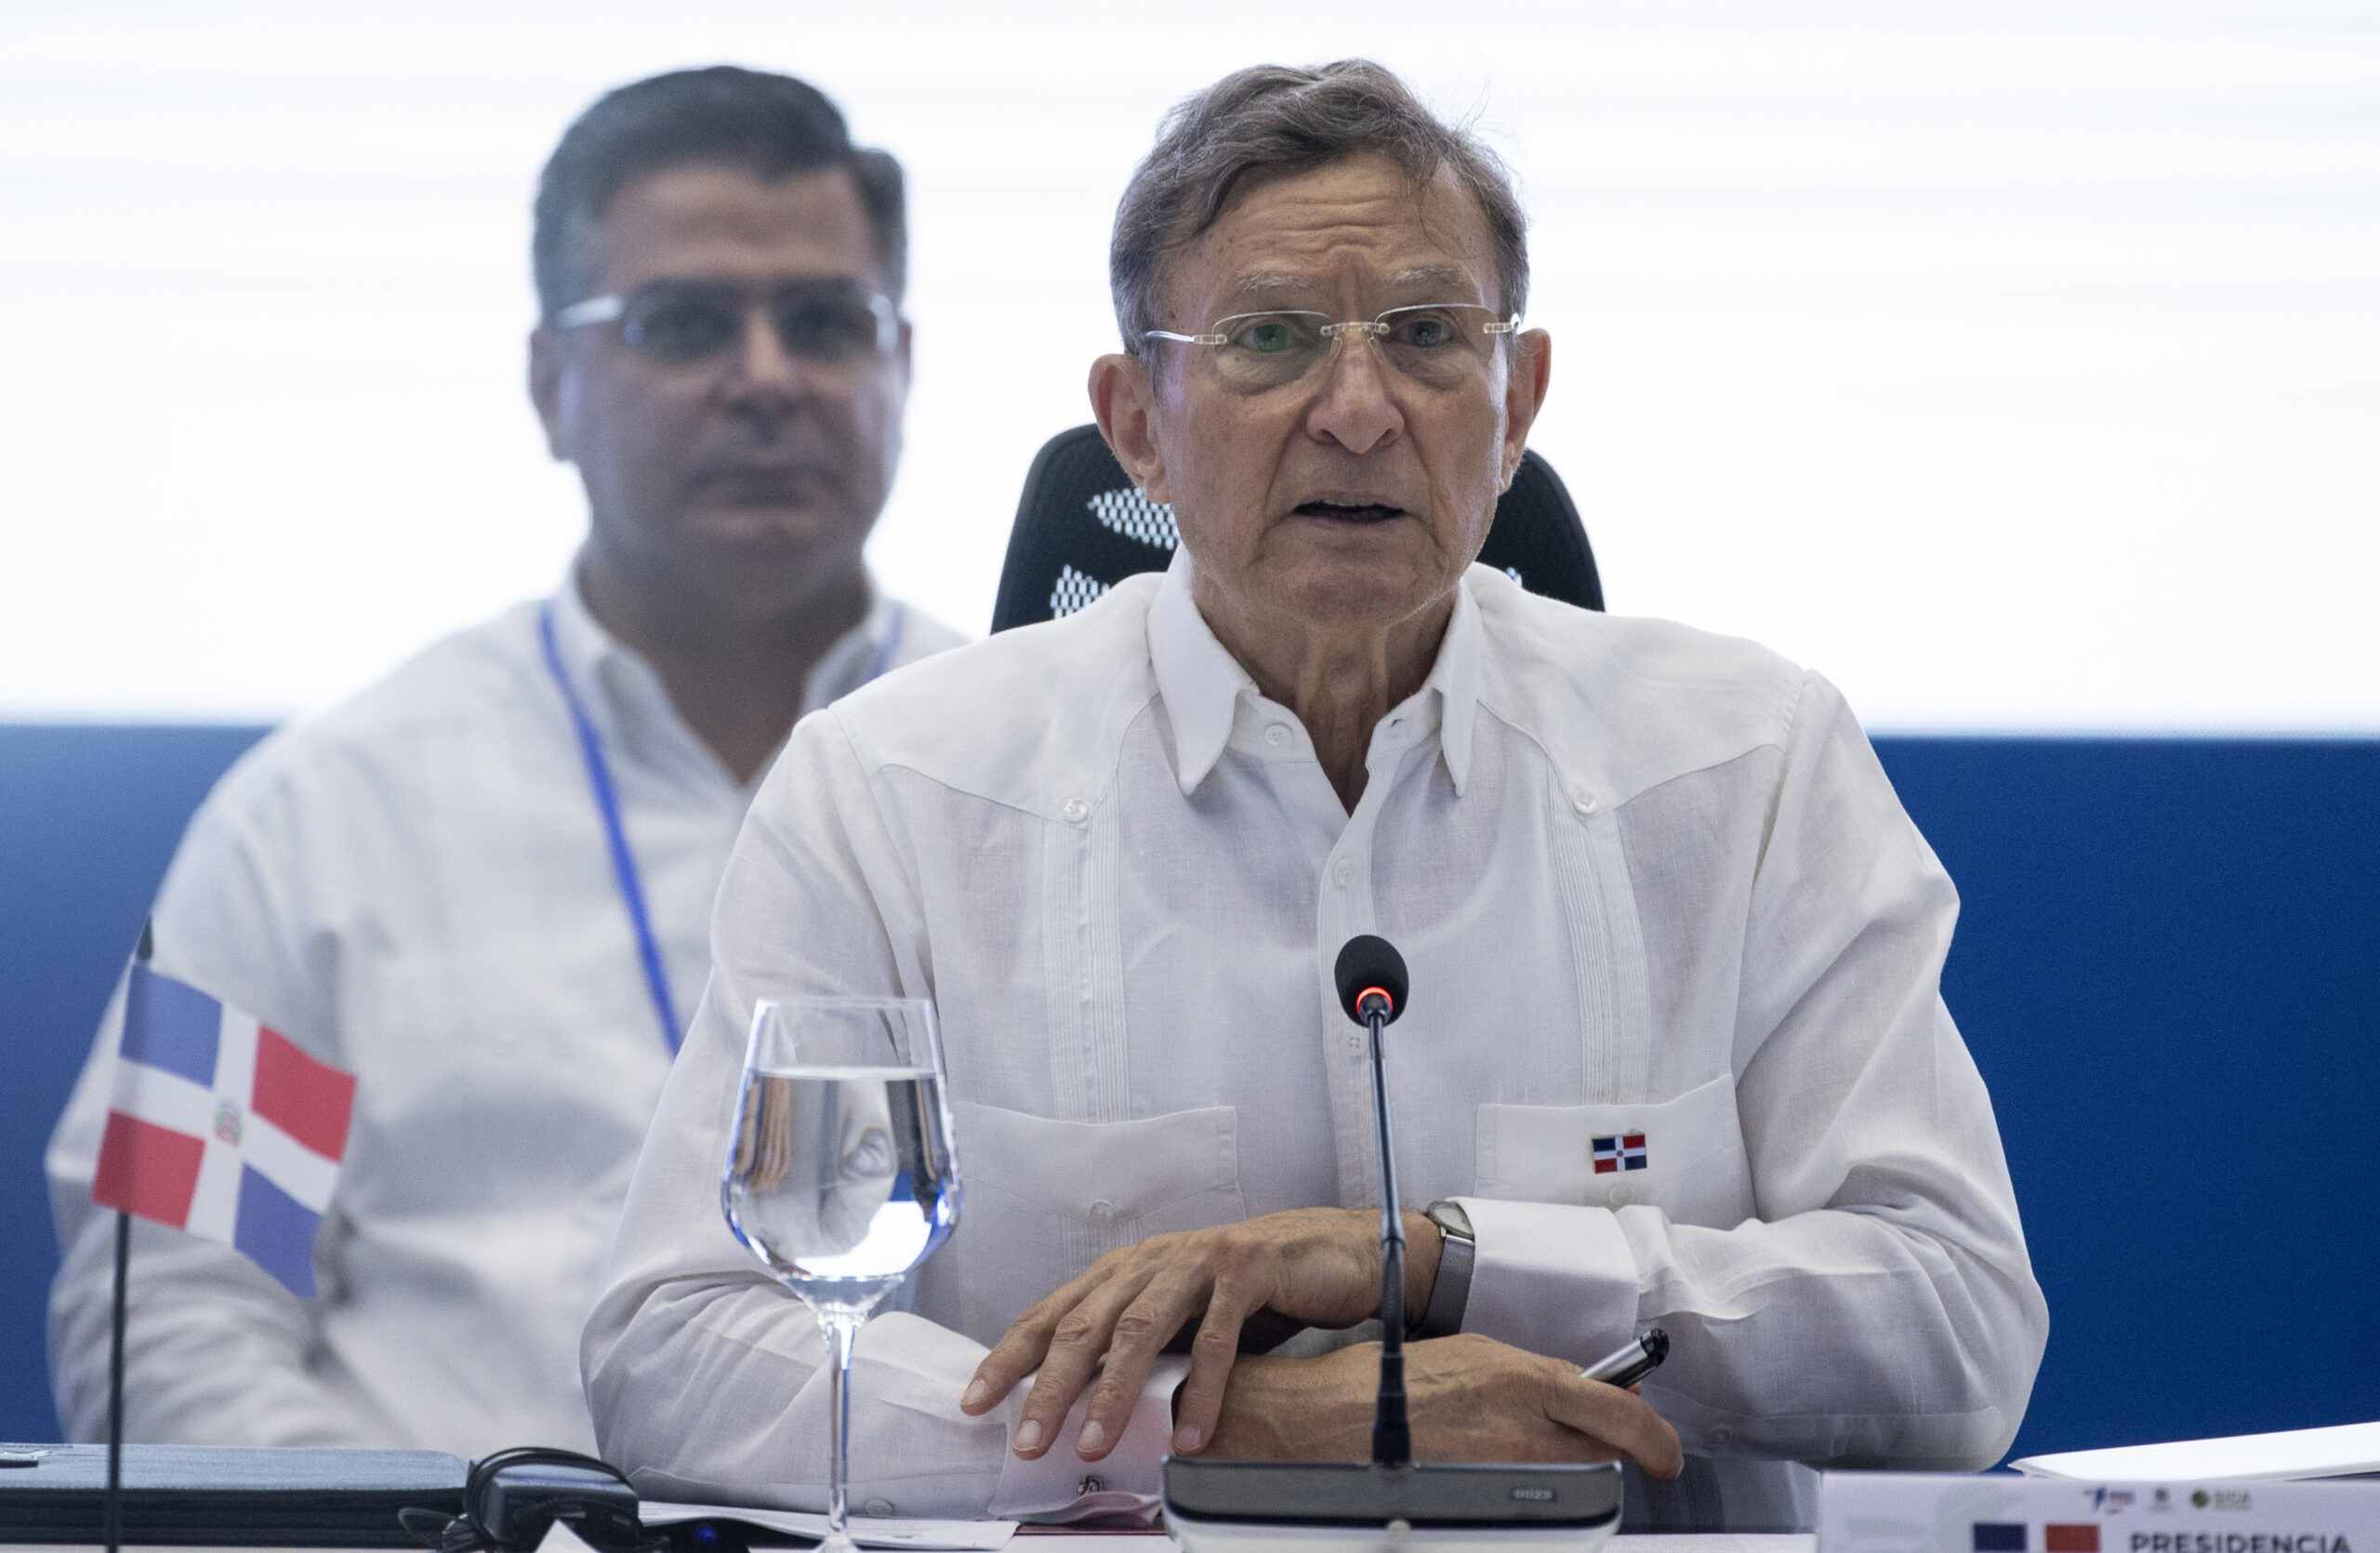 Catorce mandatarios de Iberoamérica han confirmado su asistencia a la cumbre